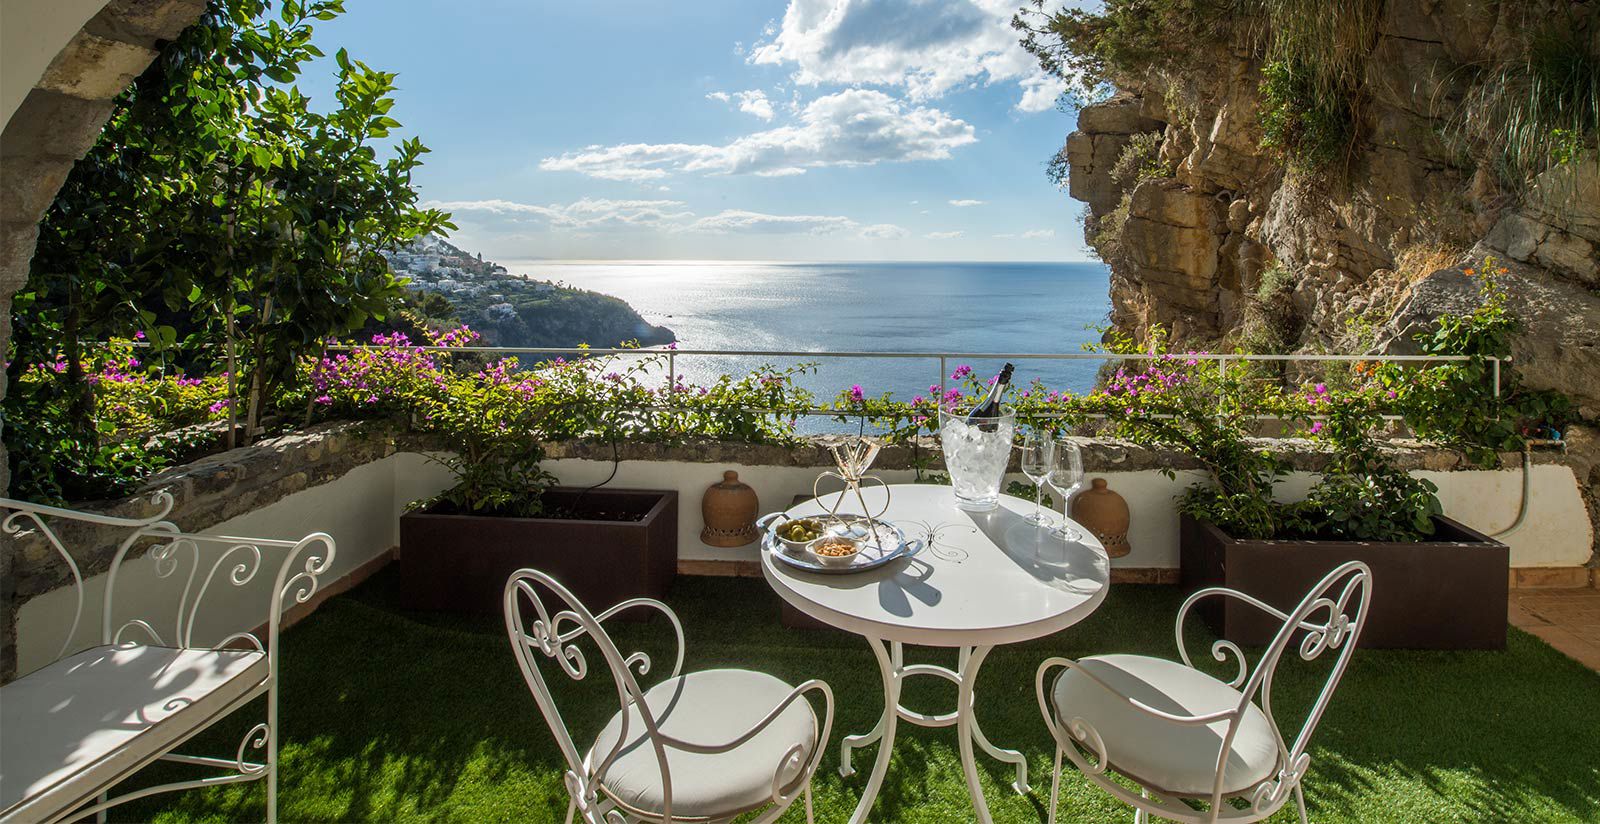 A terrace on the Amalfi Coast